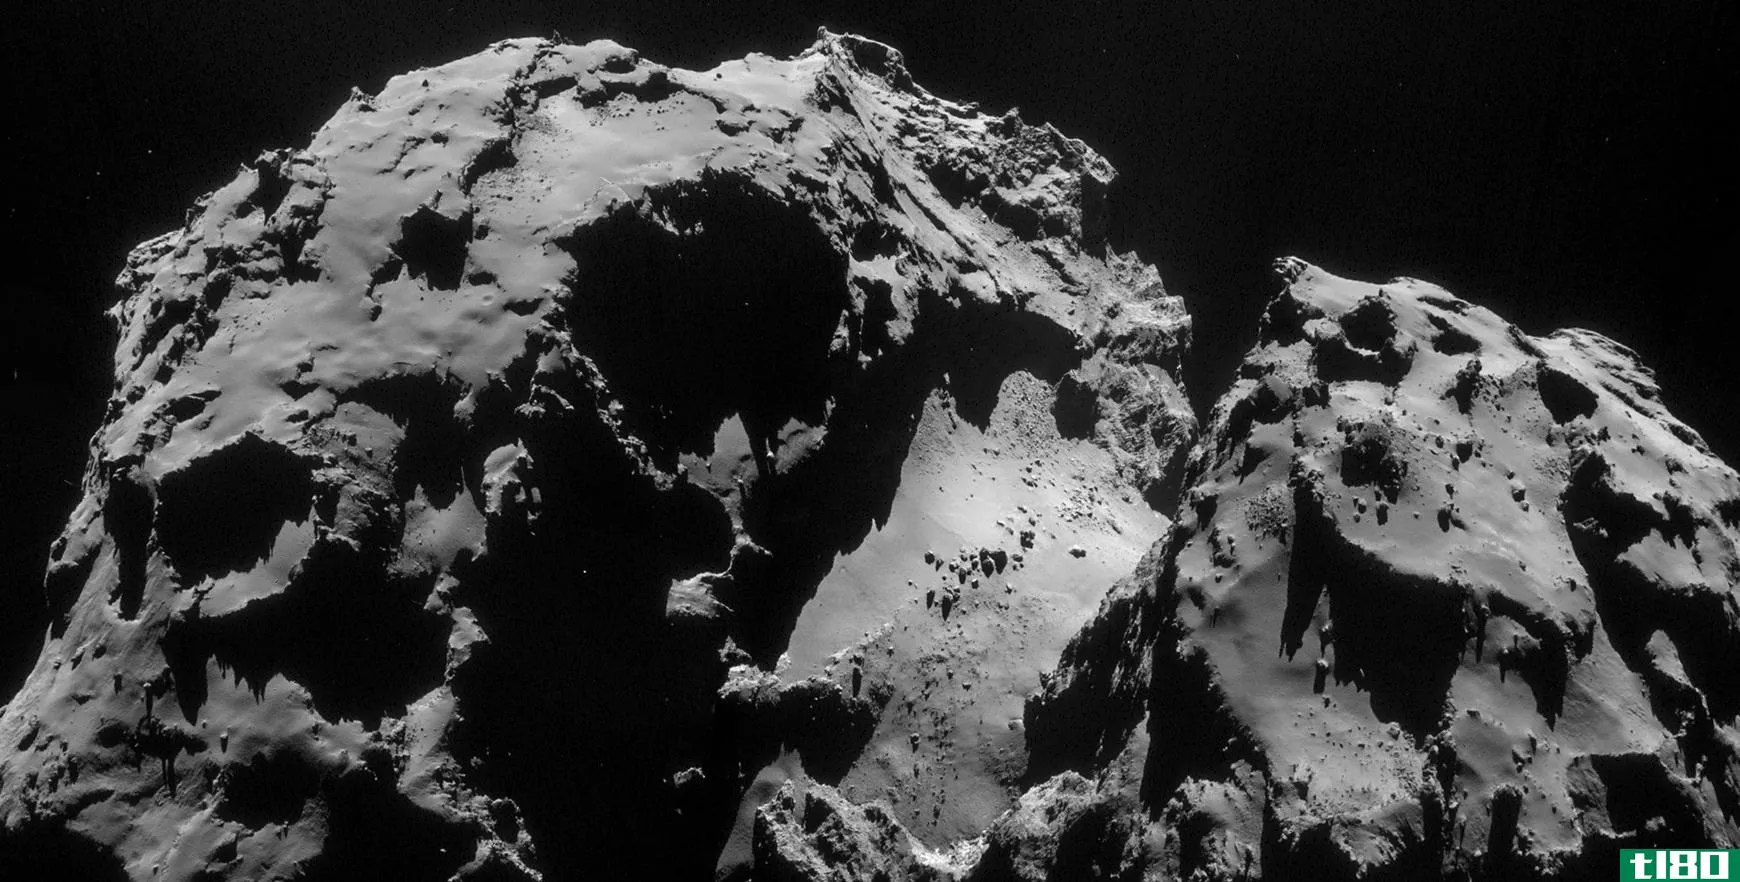 来自欧空局菲莱登陆器的数据提供了对彗星起源的洞察